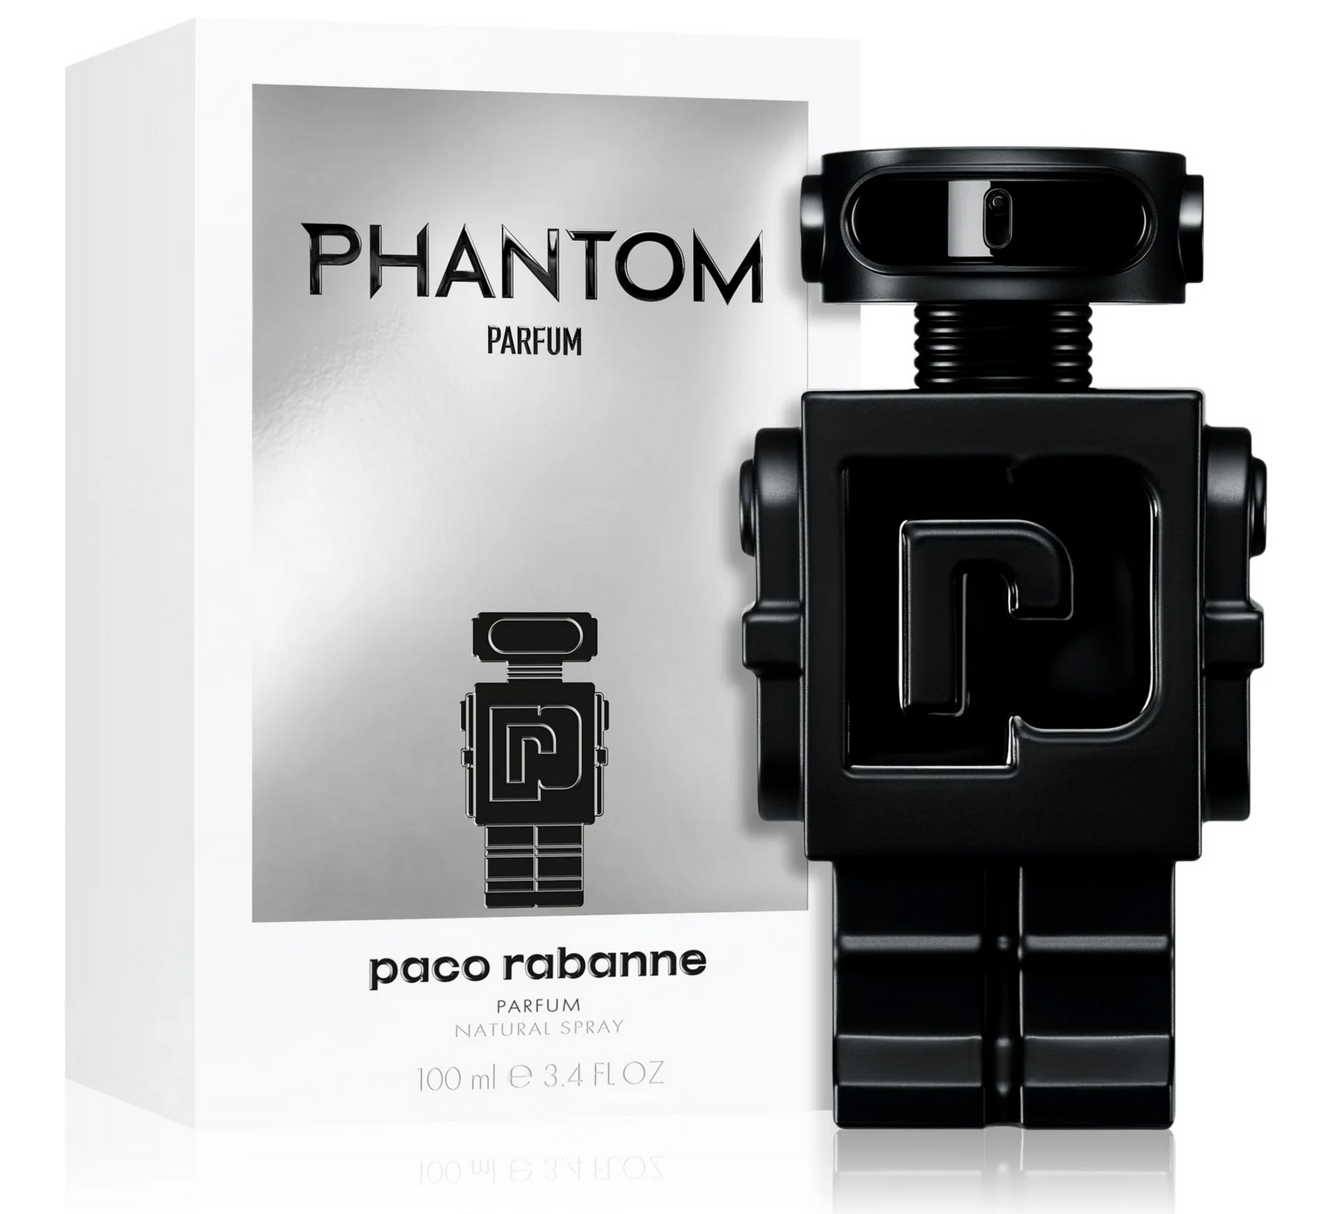 Phantom Parfum 100 spray